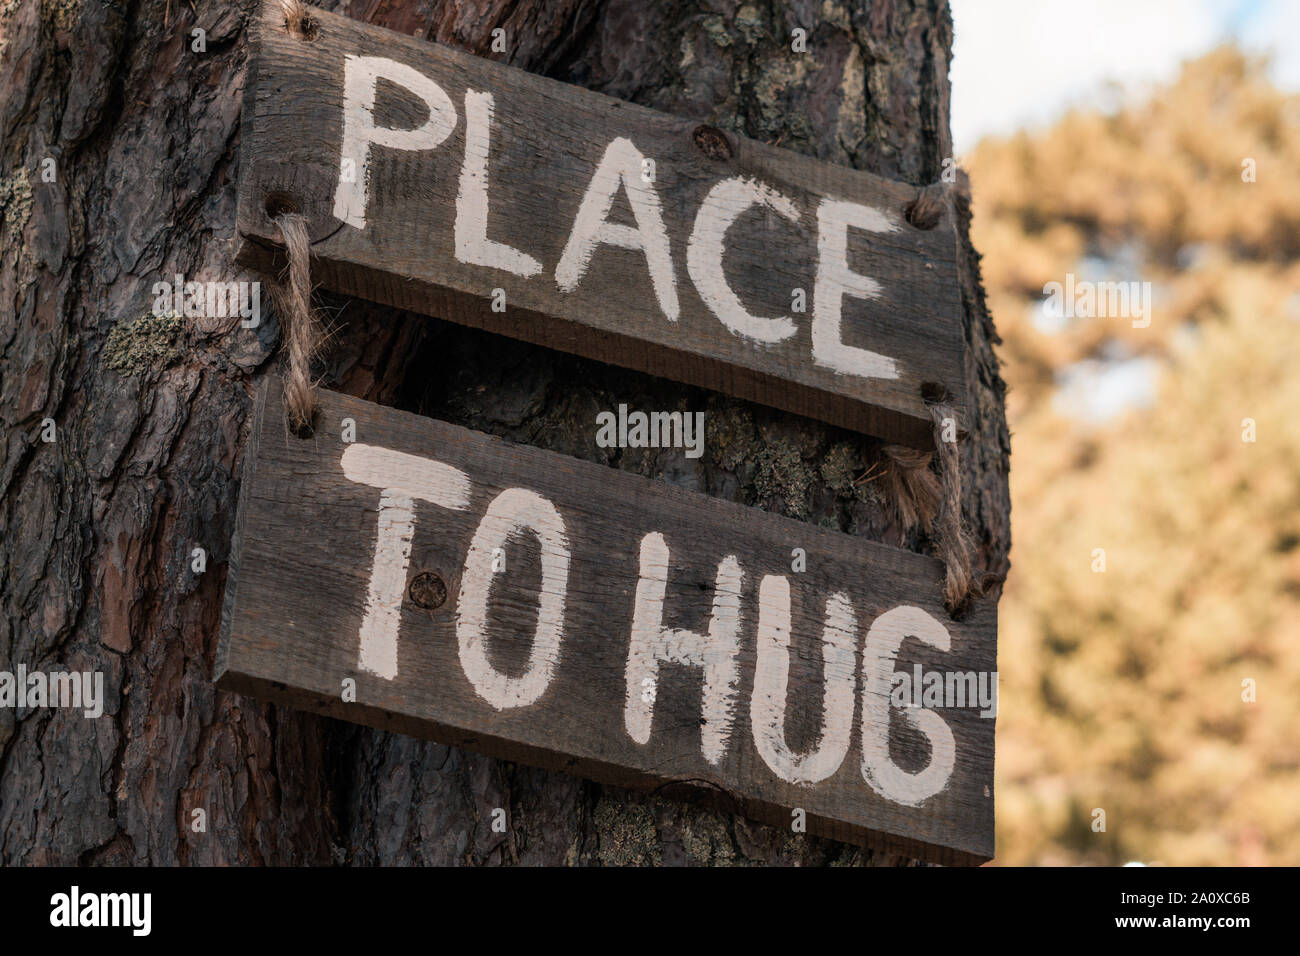 Eine hölzerne motivierender Tablet auf einer alten Kiefer in einem Herbst Park sagt "Platz zu umarmen". Kann als eine Abbildung oder ein Marketing Konzept verwendet werden. Einheit mit Stockfoto